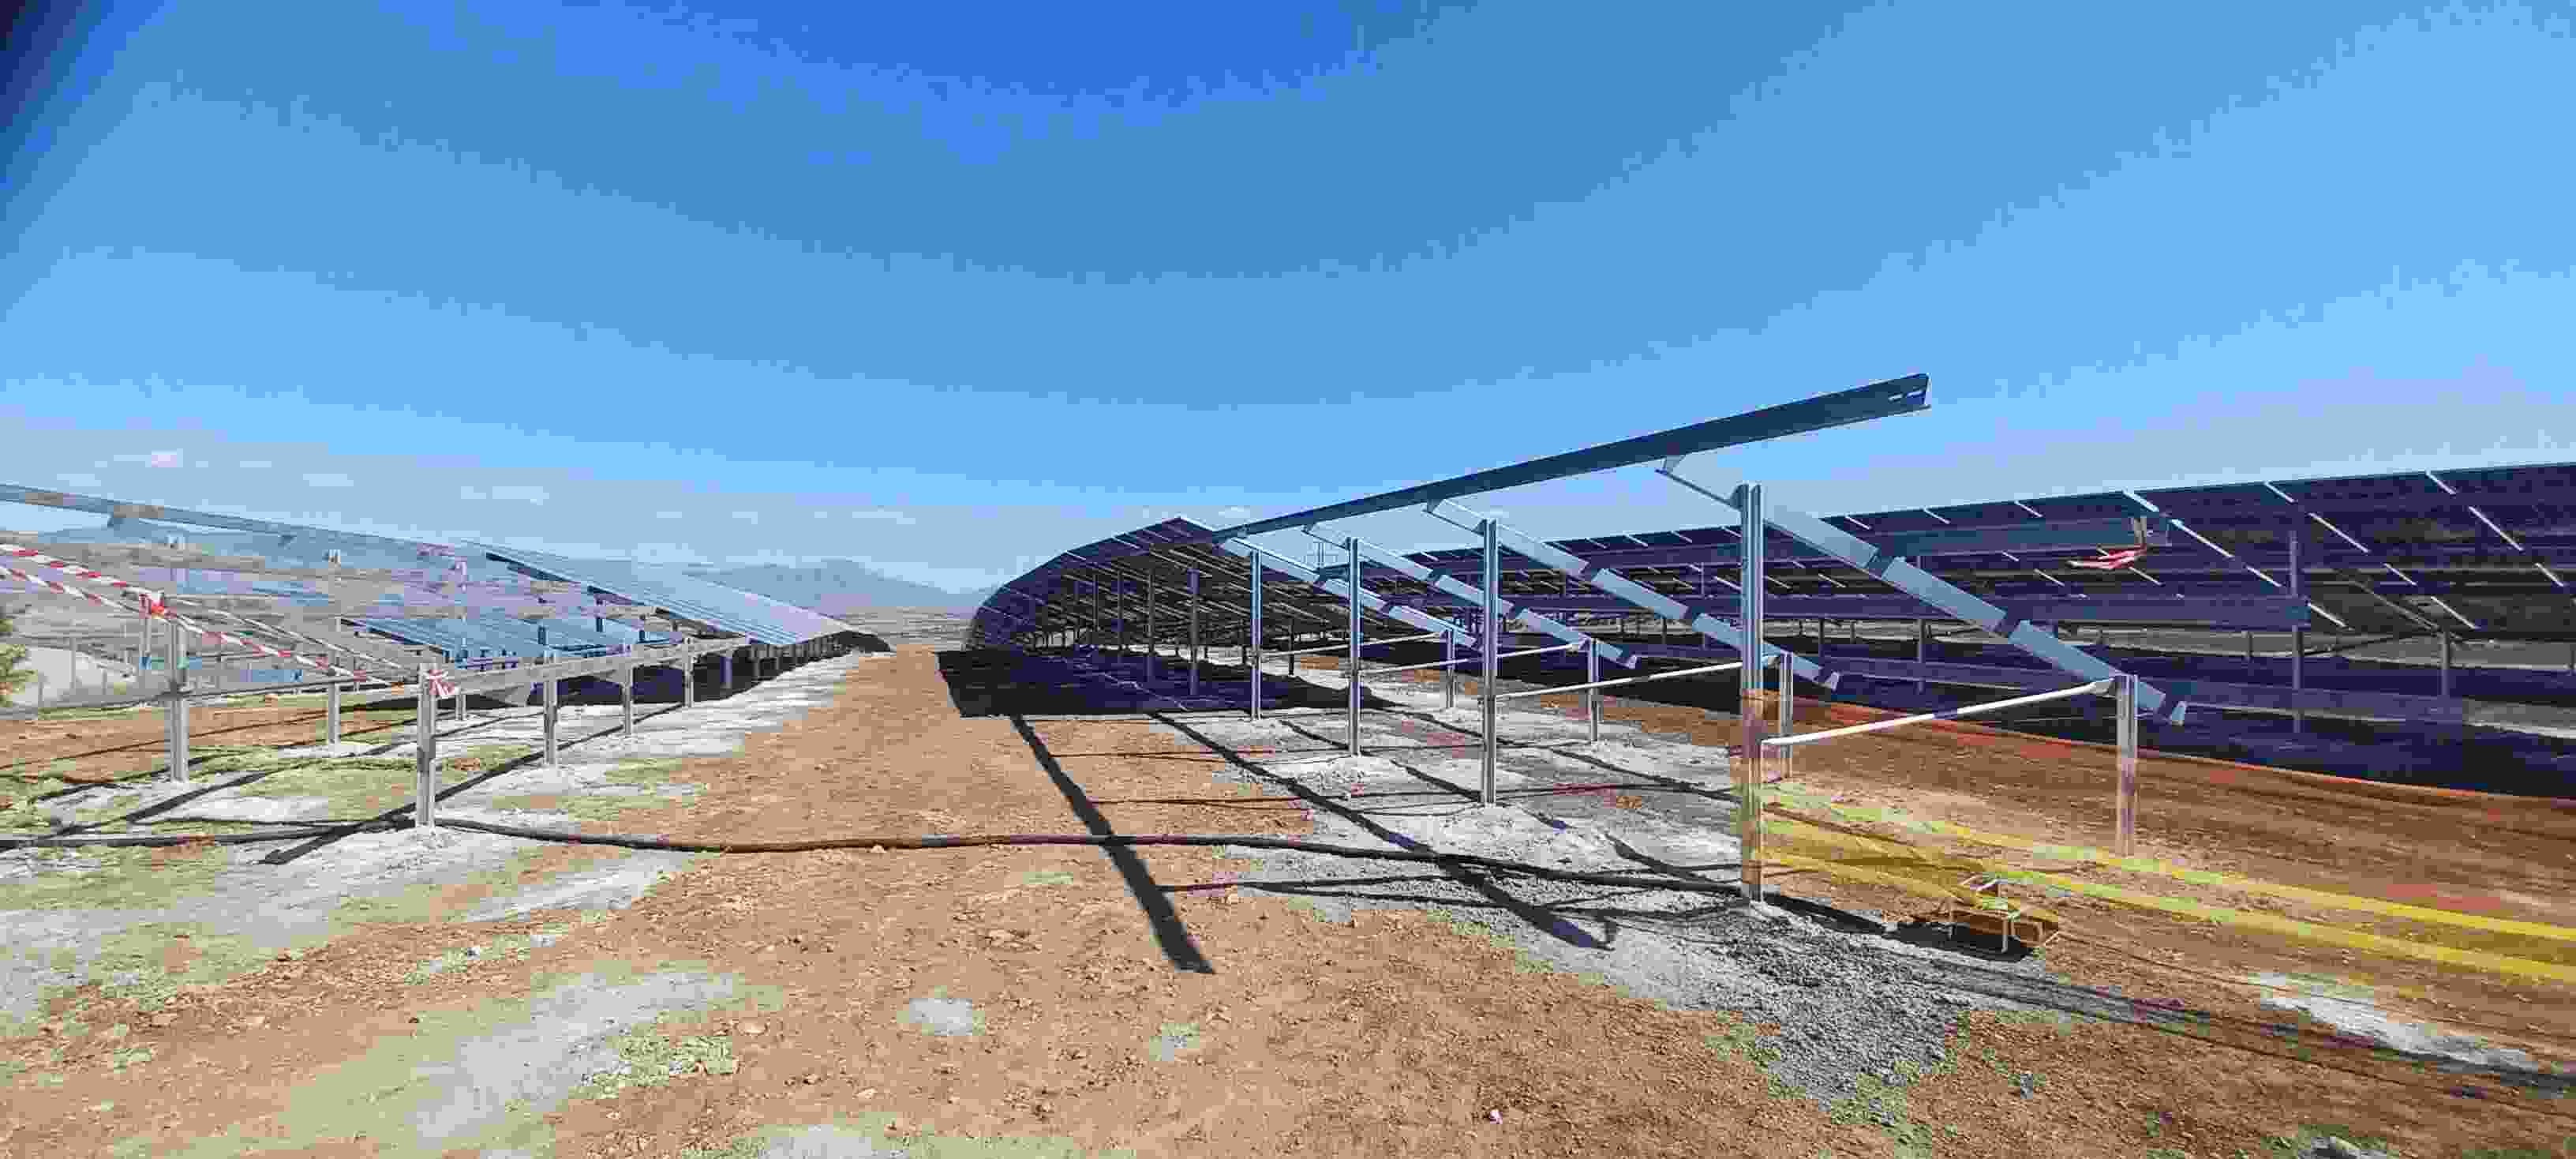 kozani-fotovoltaiko-parko2.jpg